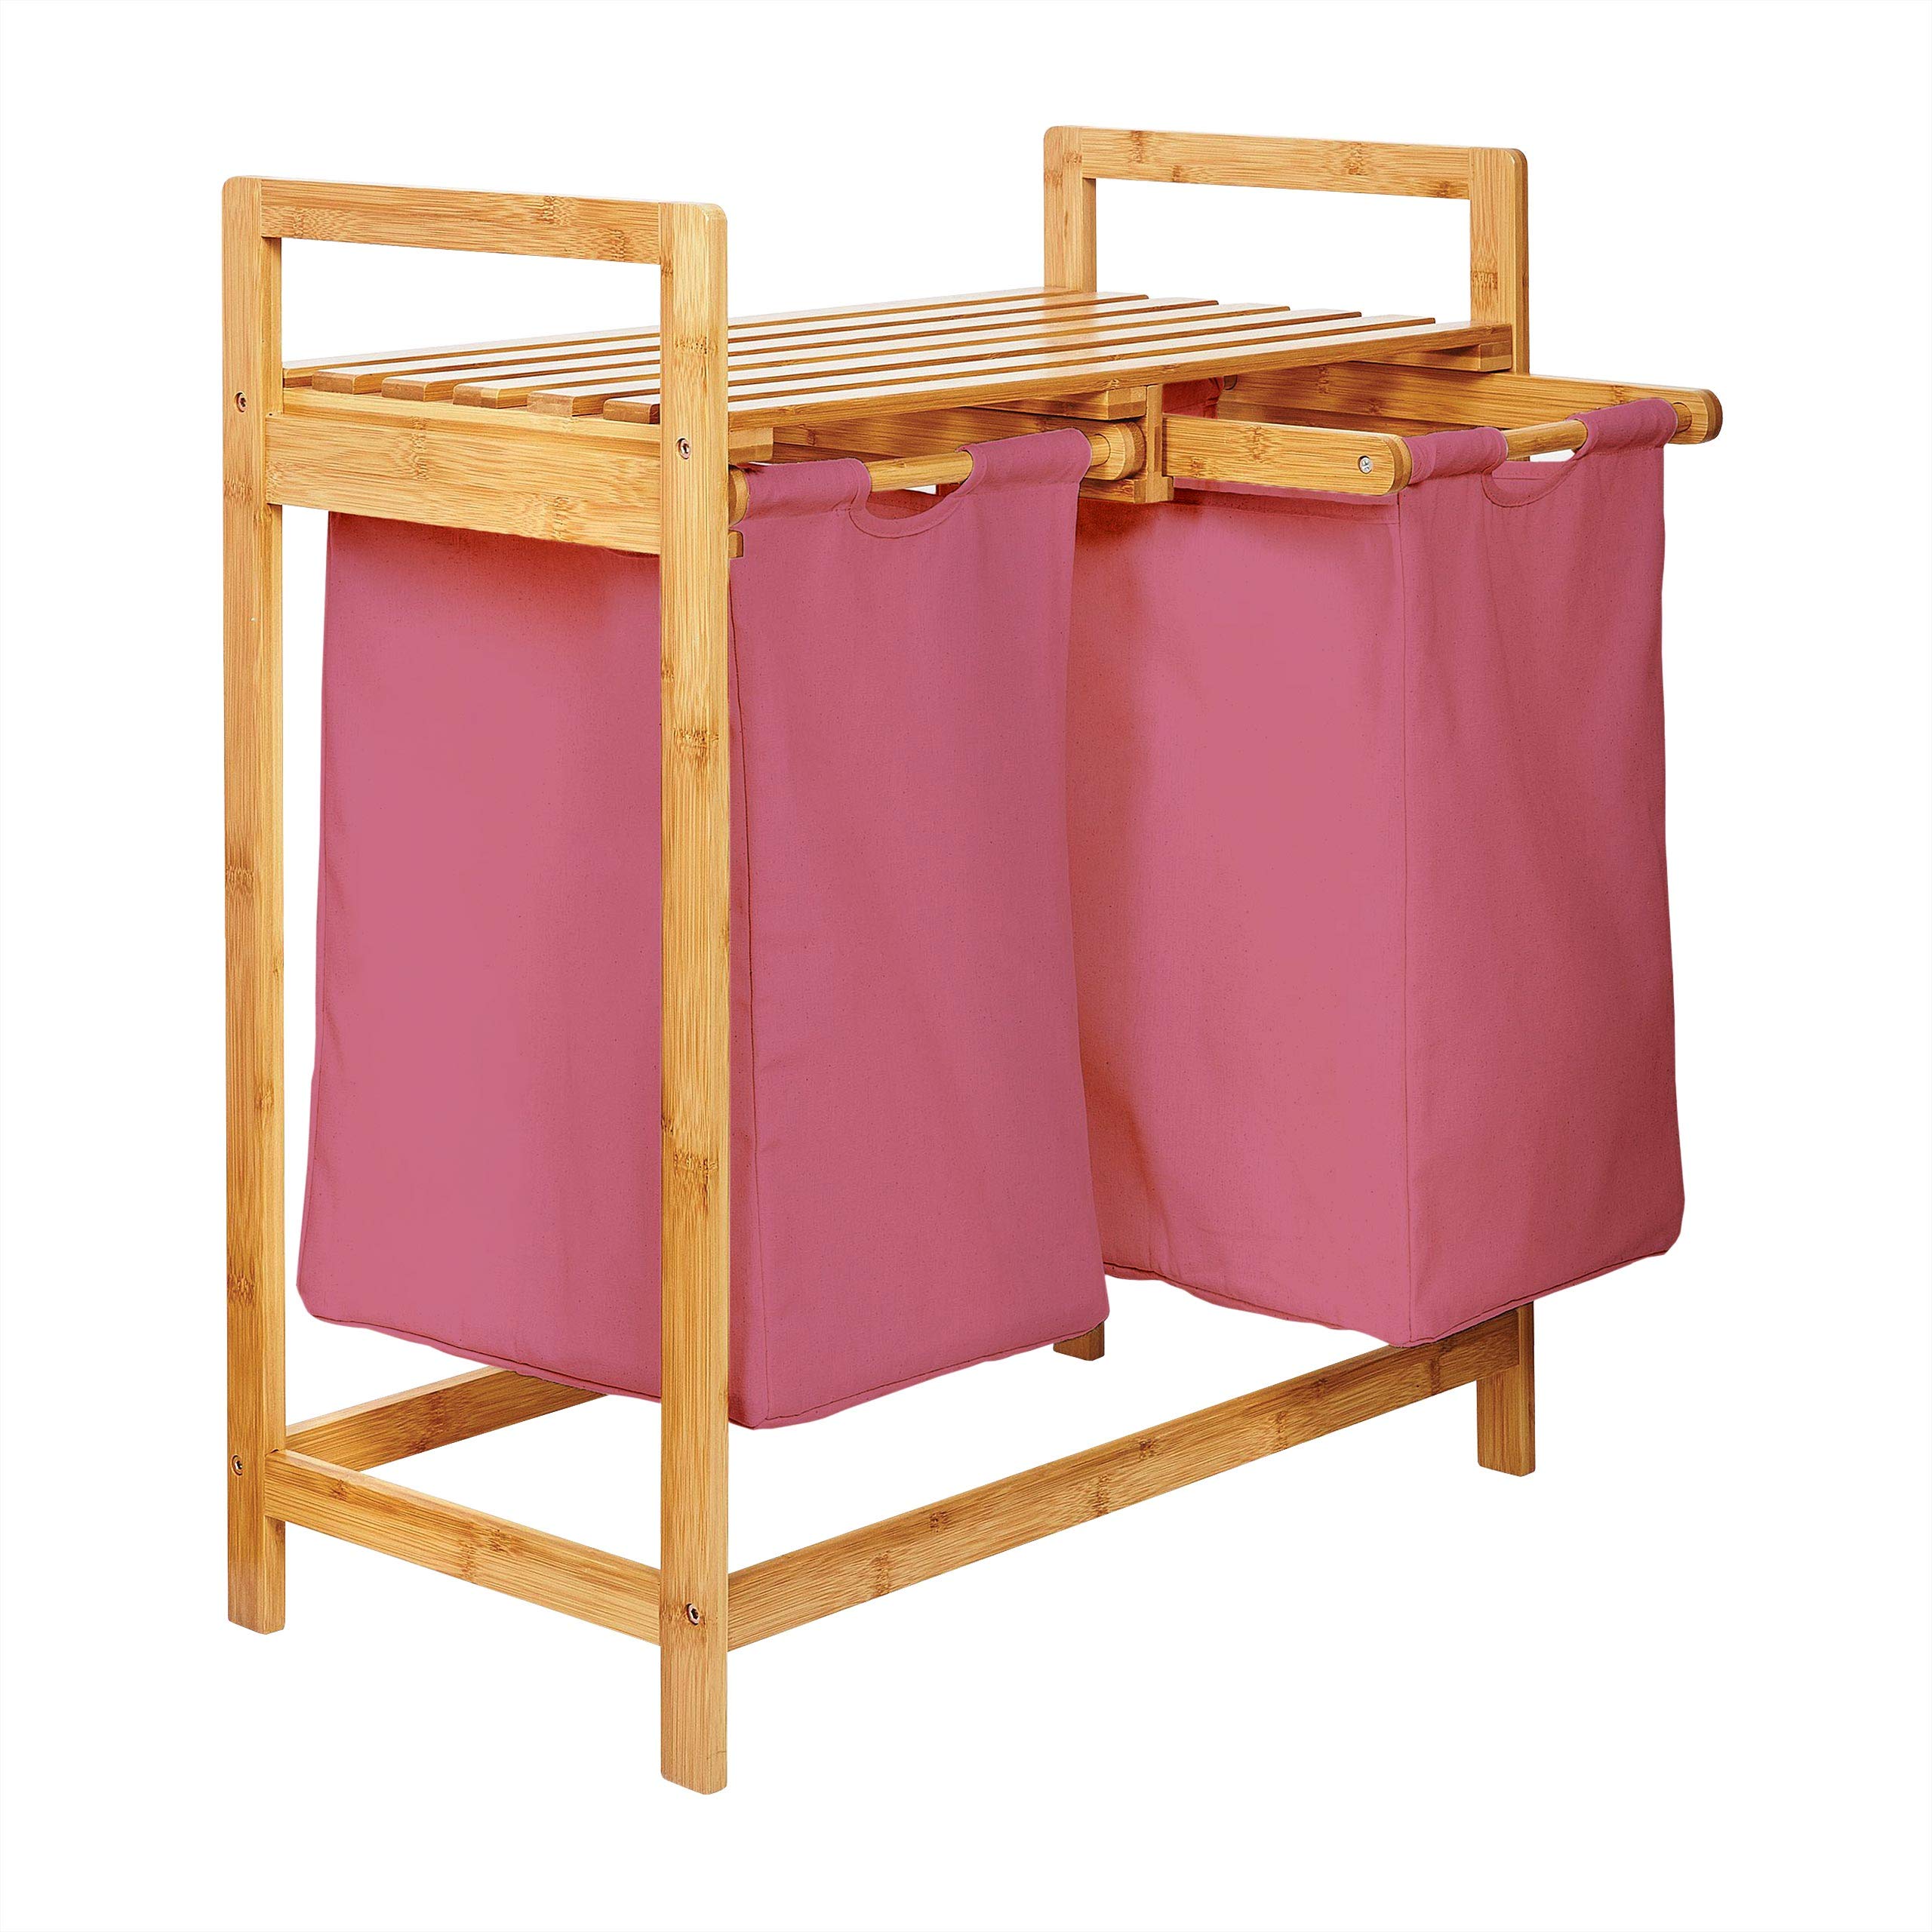 Lumaland Wäschekorb aus Bambus mit 2 ausziehbaren Wäschesäcken | Größe ca. 73 cm Höhe x 64 cm Breite x 33 cm Tiefe, Farbe: Rosa